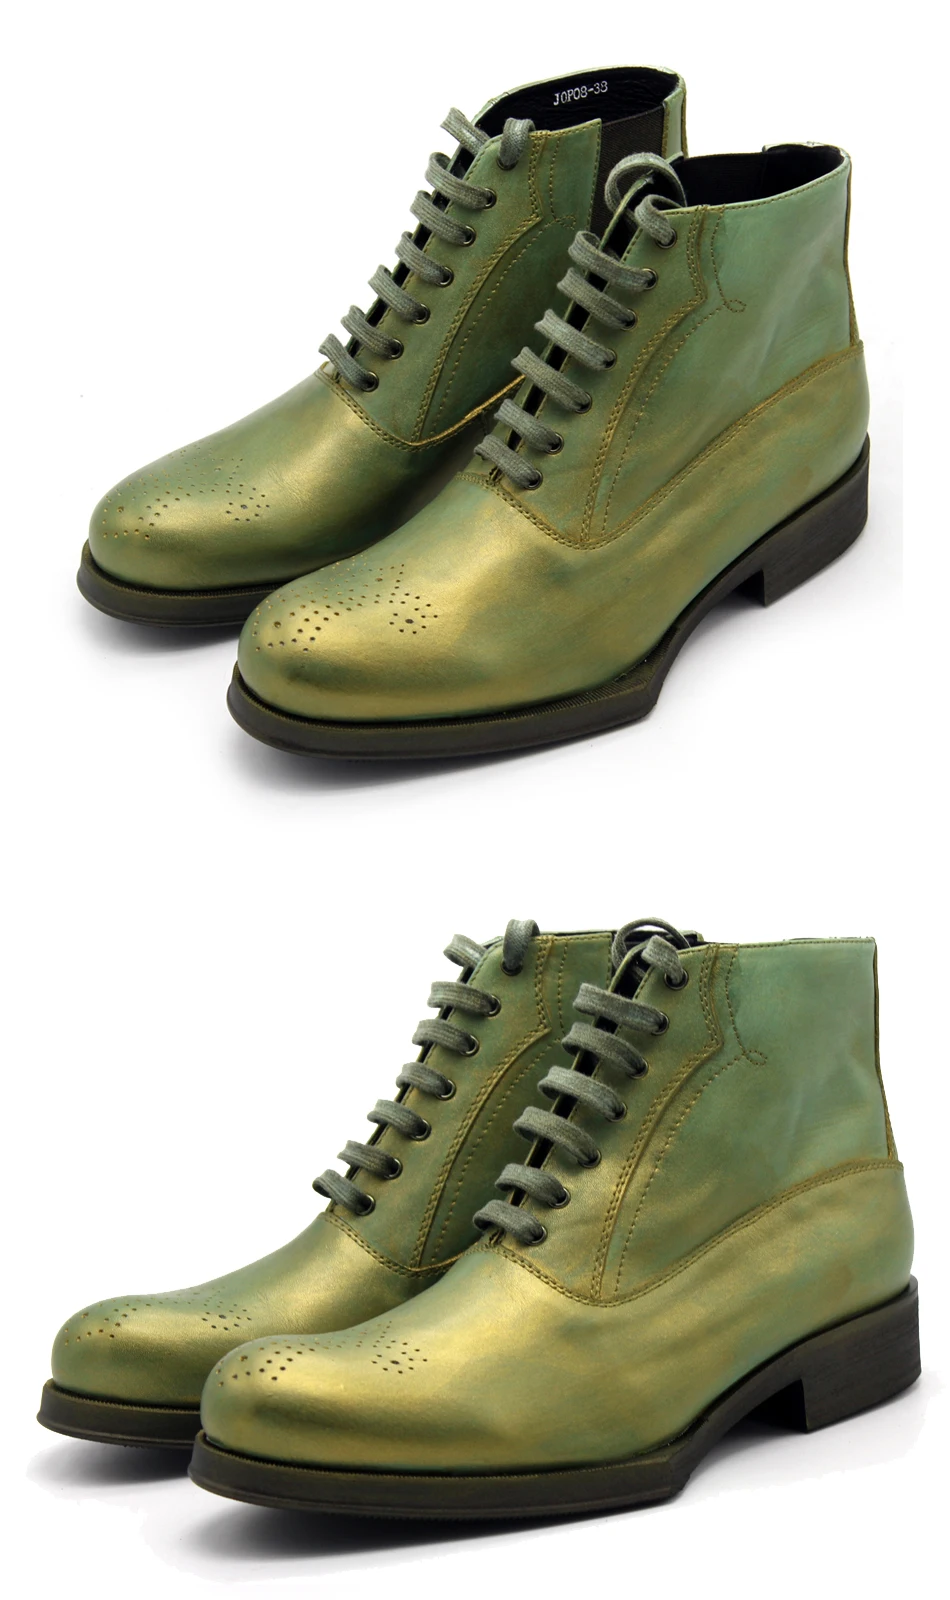 Ботинки martin из натуральной кожи; мужские уличные ботинки ручной работы; Резные геометрические Полуботинки на шнуровке из воловьей кожи; цвет синий, зеленый; повседневная обувь